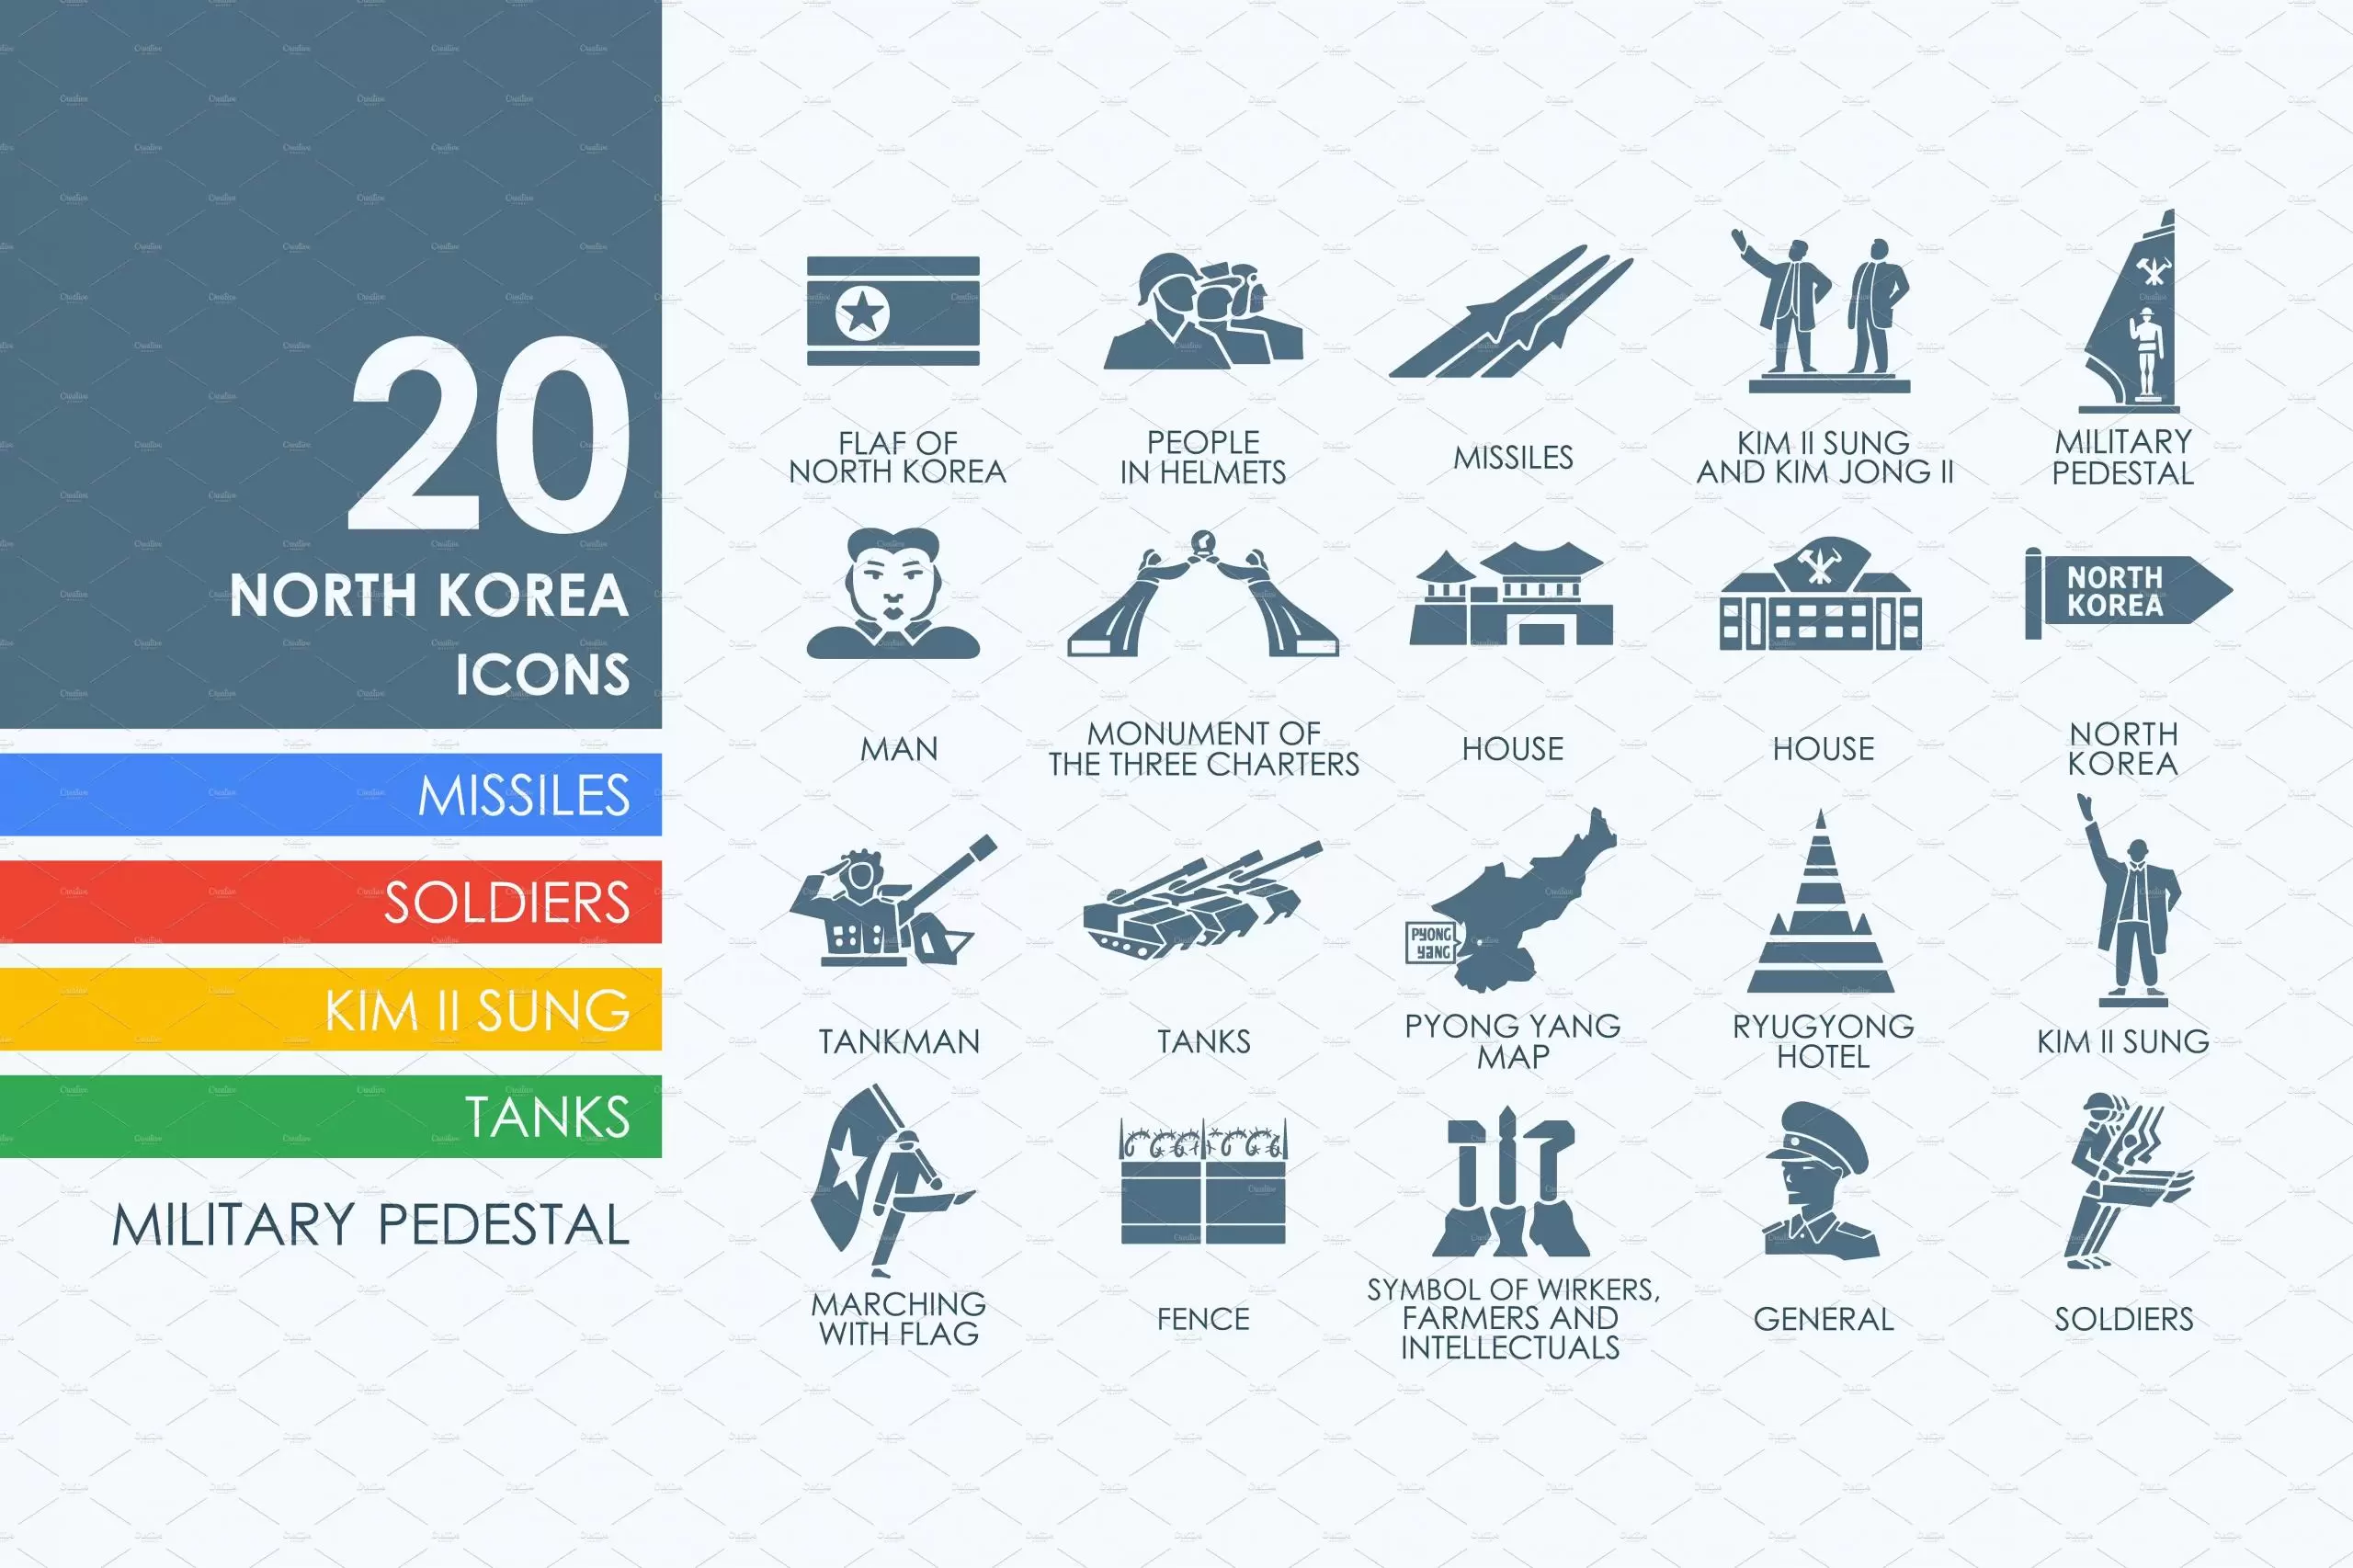 朝鲜图标素材 Set of North Korea icons插图